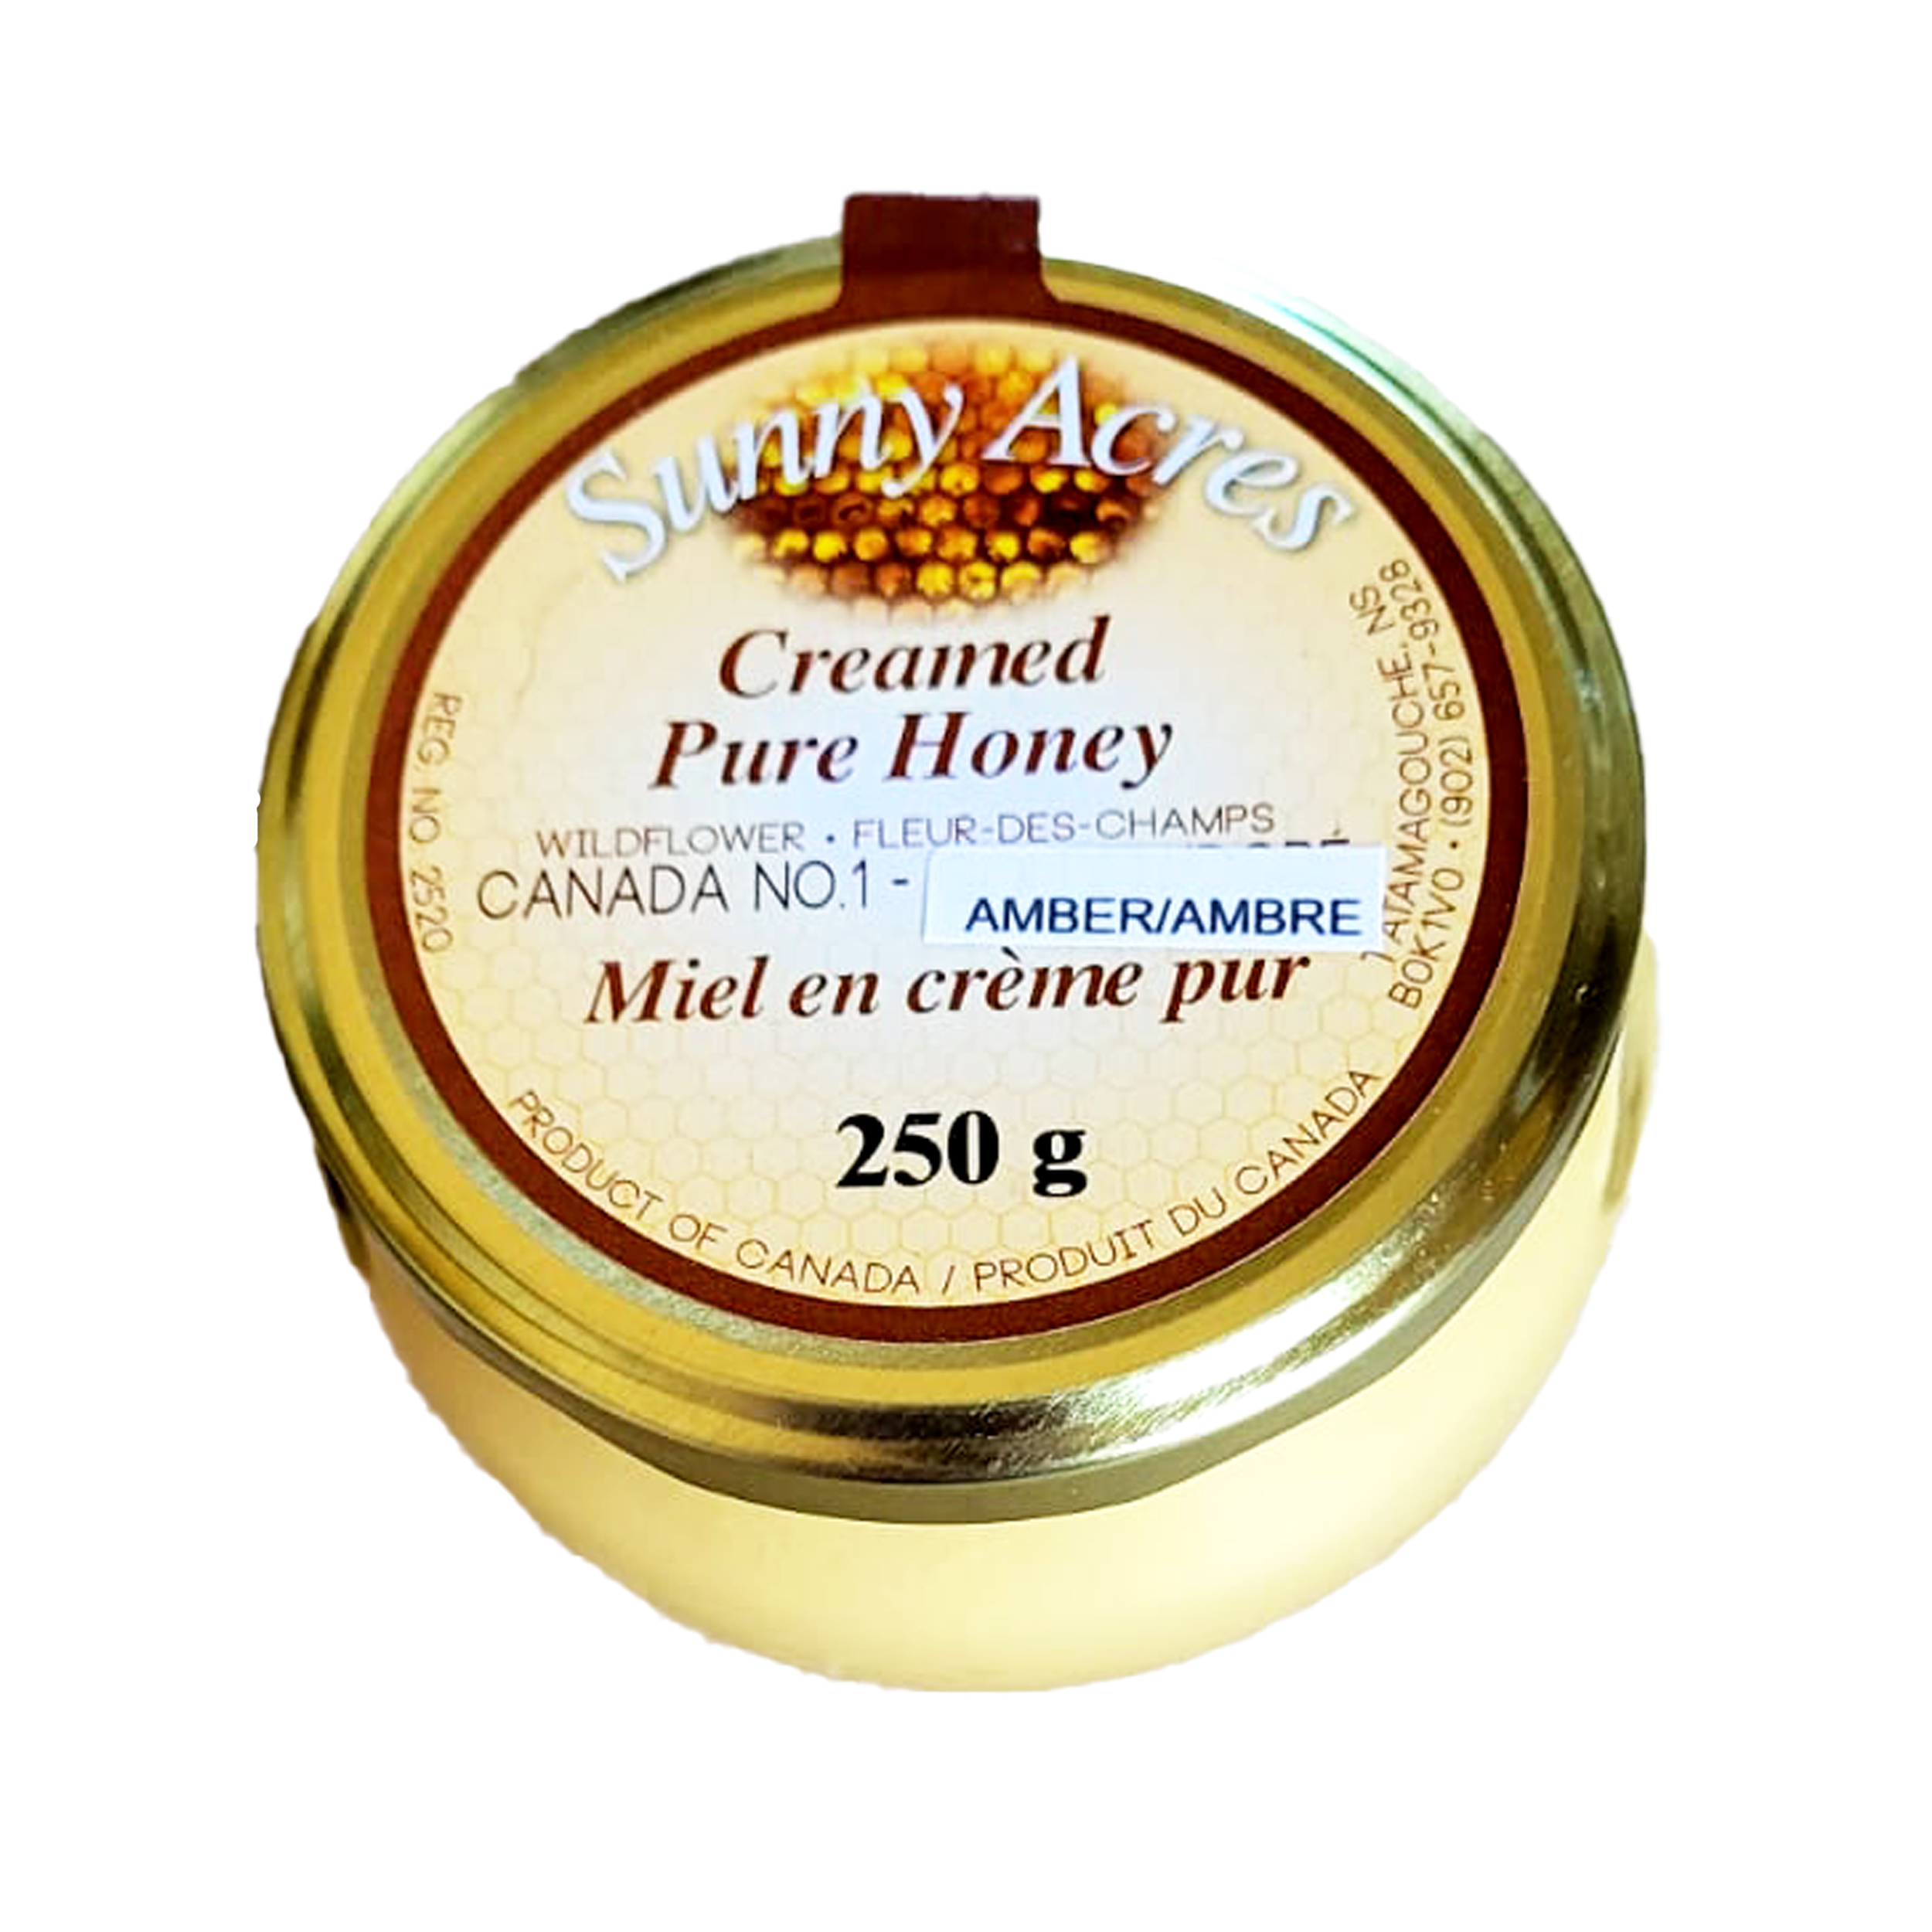 Small jar of Nova Scotia pure creamed honey